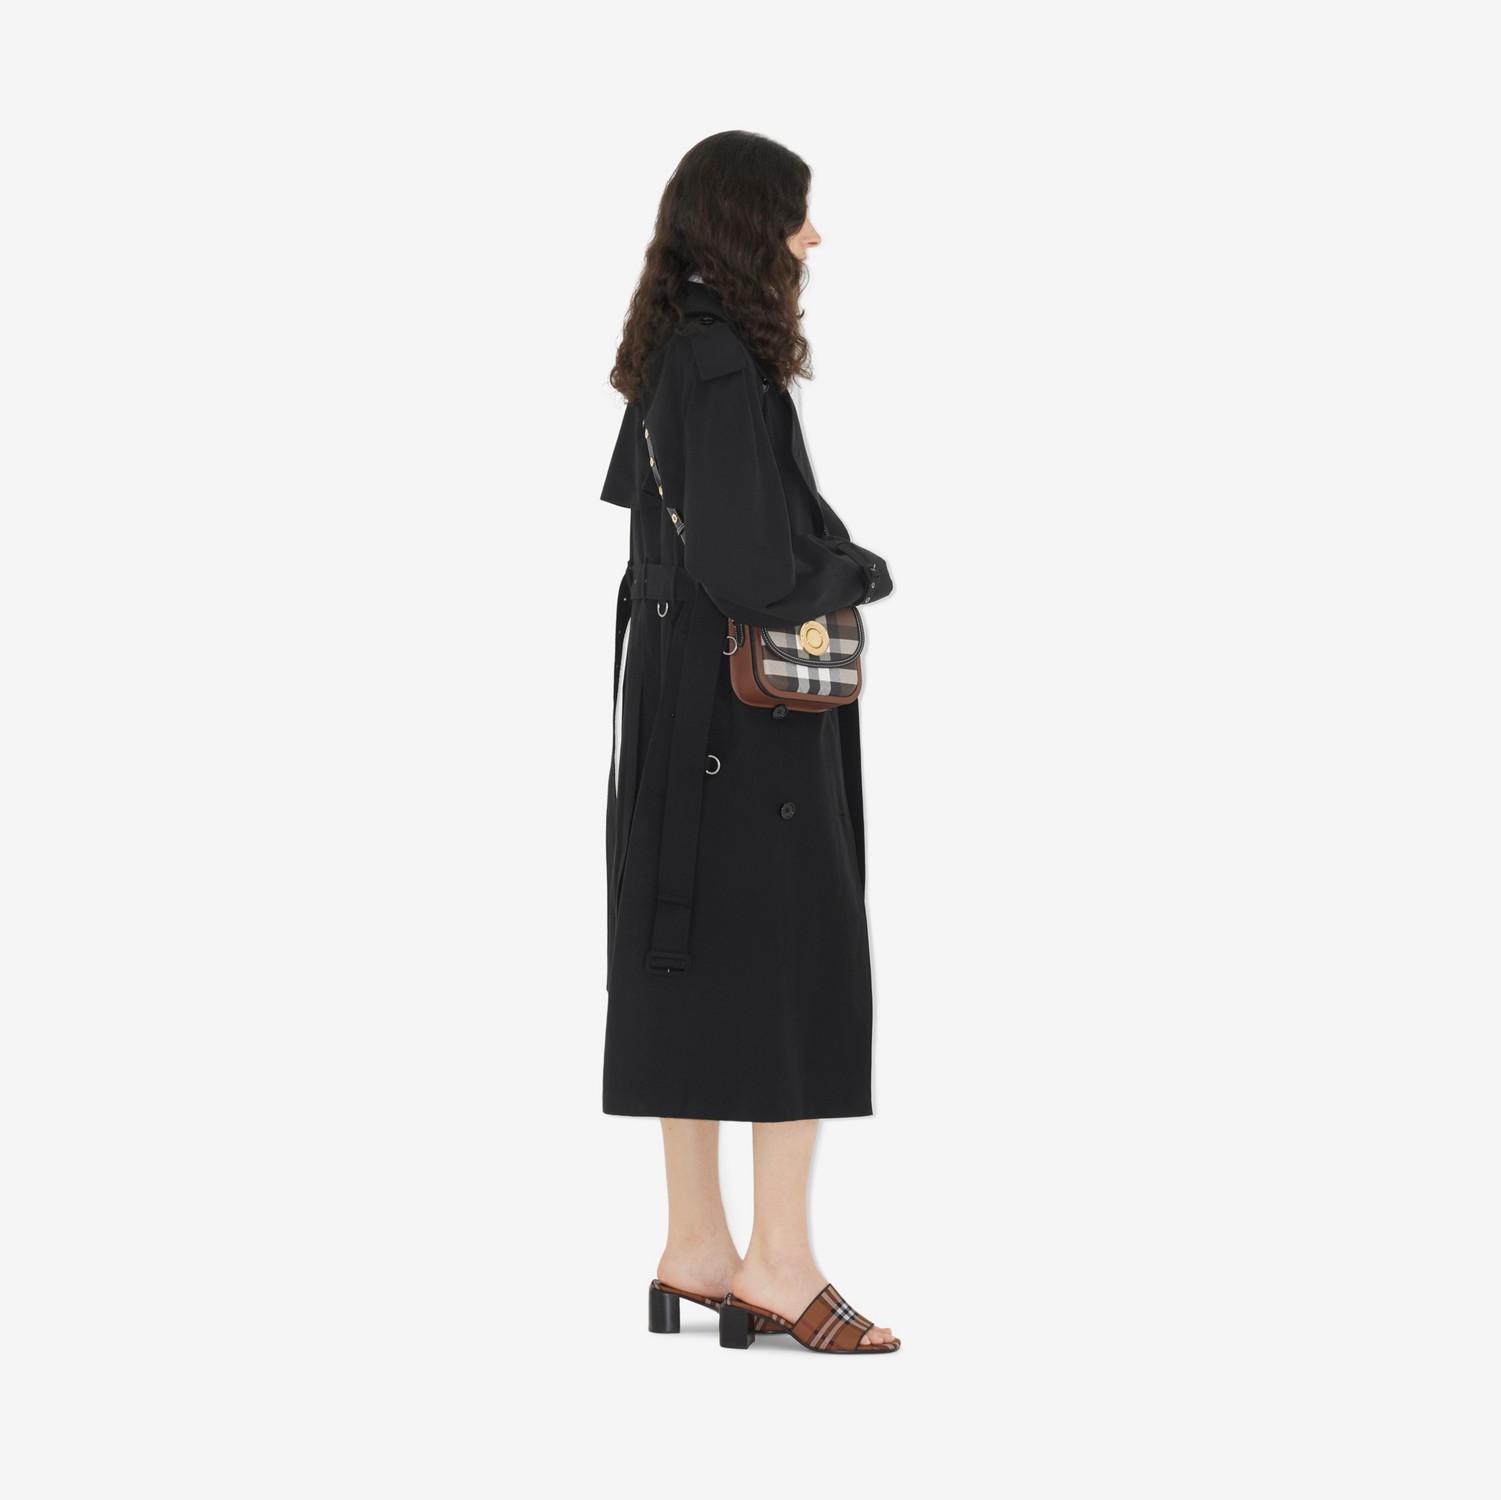 Bolsa Elizabeth de couro com estampa xadrez - Pequena (Marrom Bétula Escuro) - Mulheres | Burberry® oficial